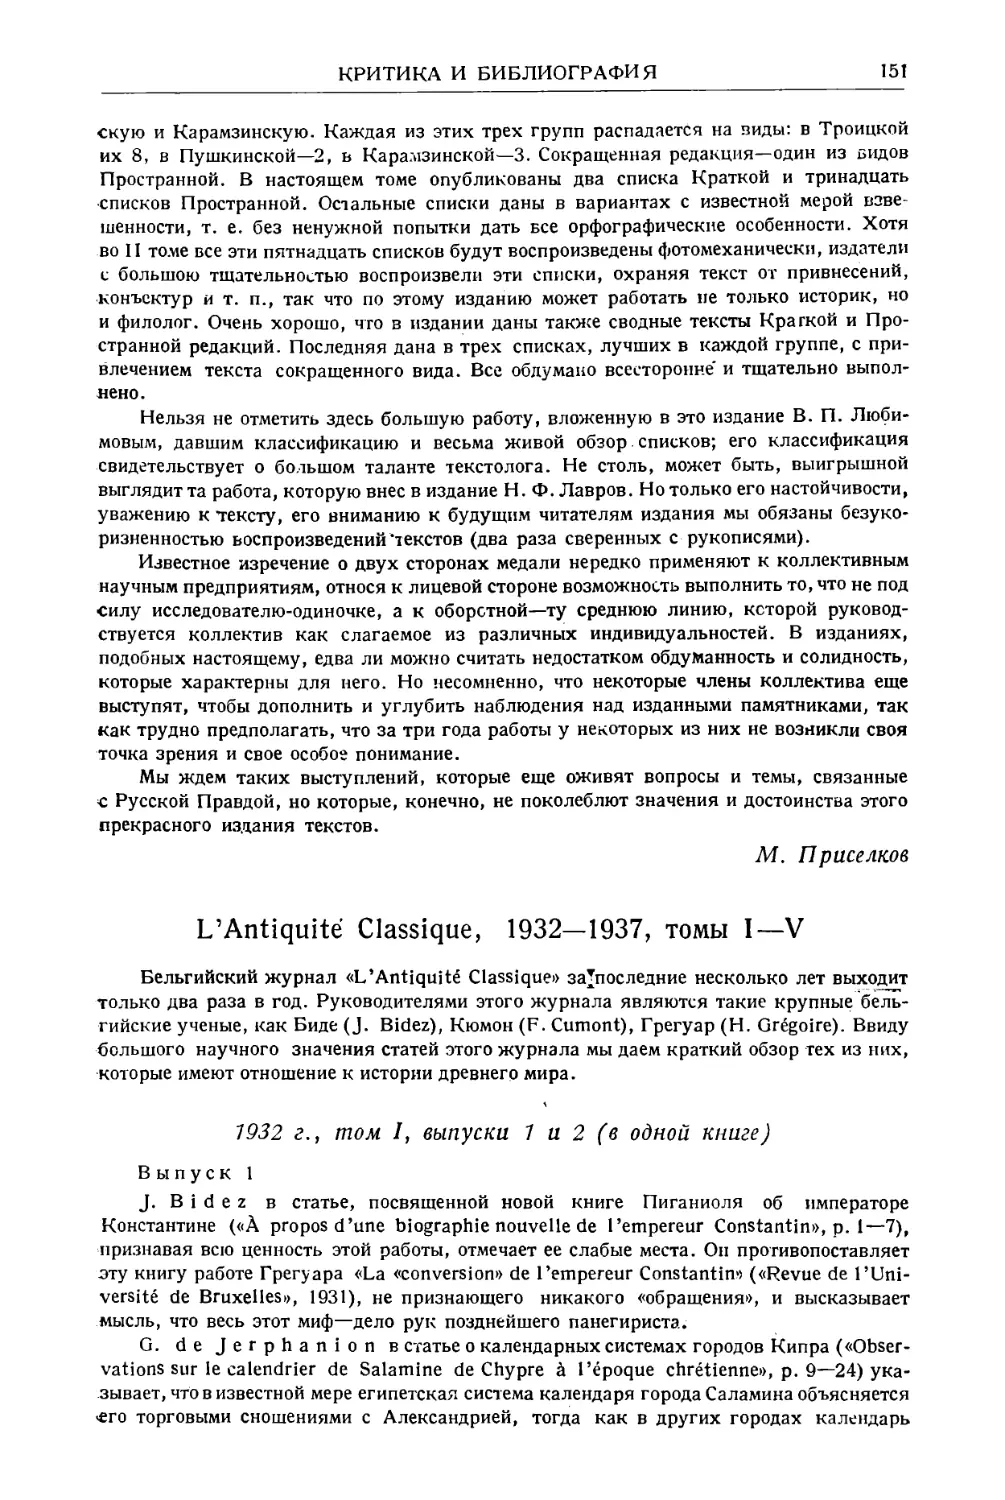 Кондратьев С.П. – Обзор журнала «L’Antiquite Classique», 1932–1937, томы I–IV